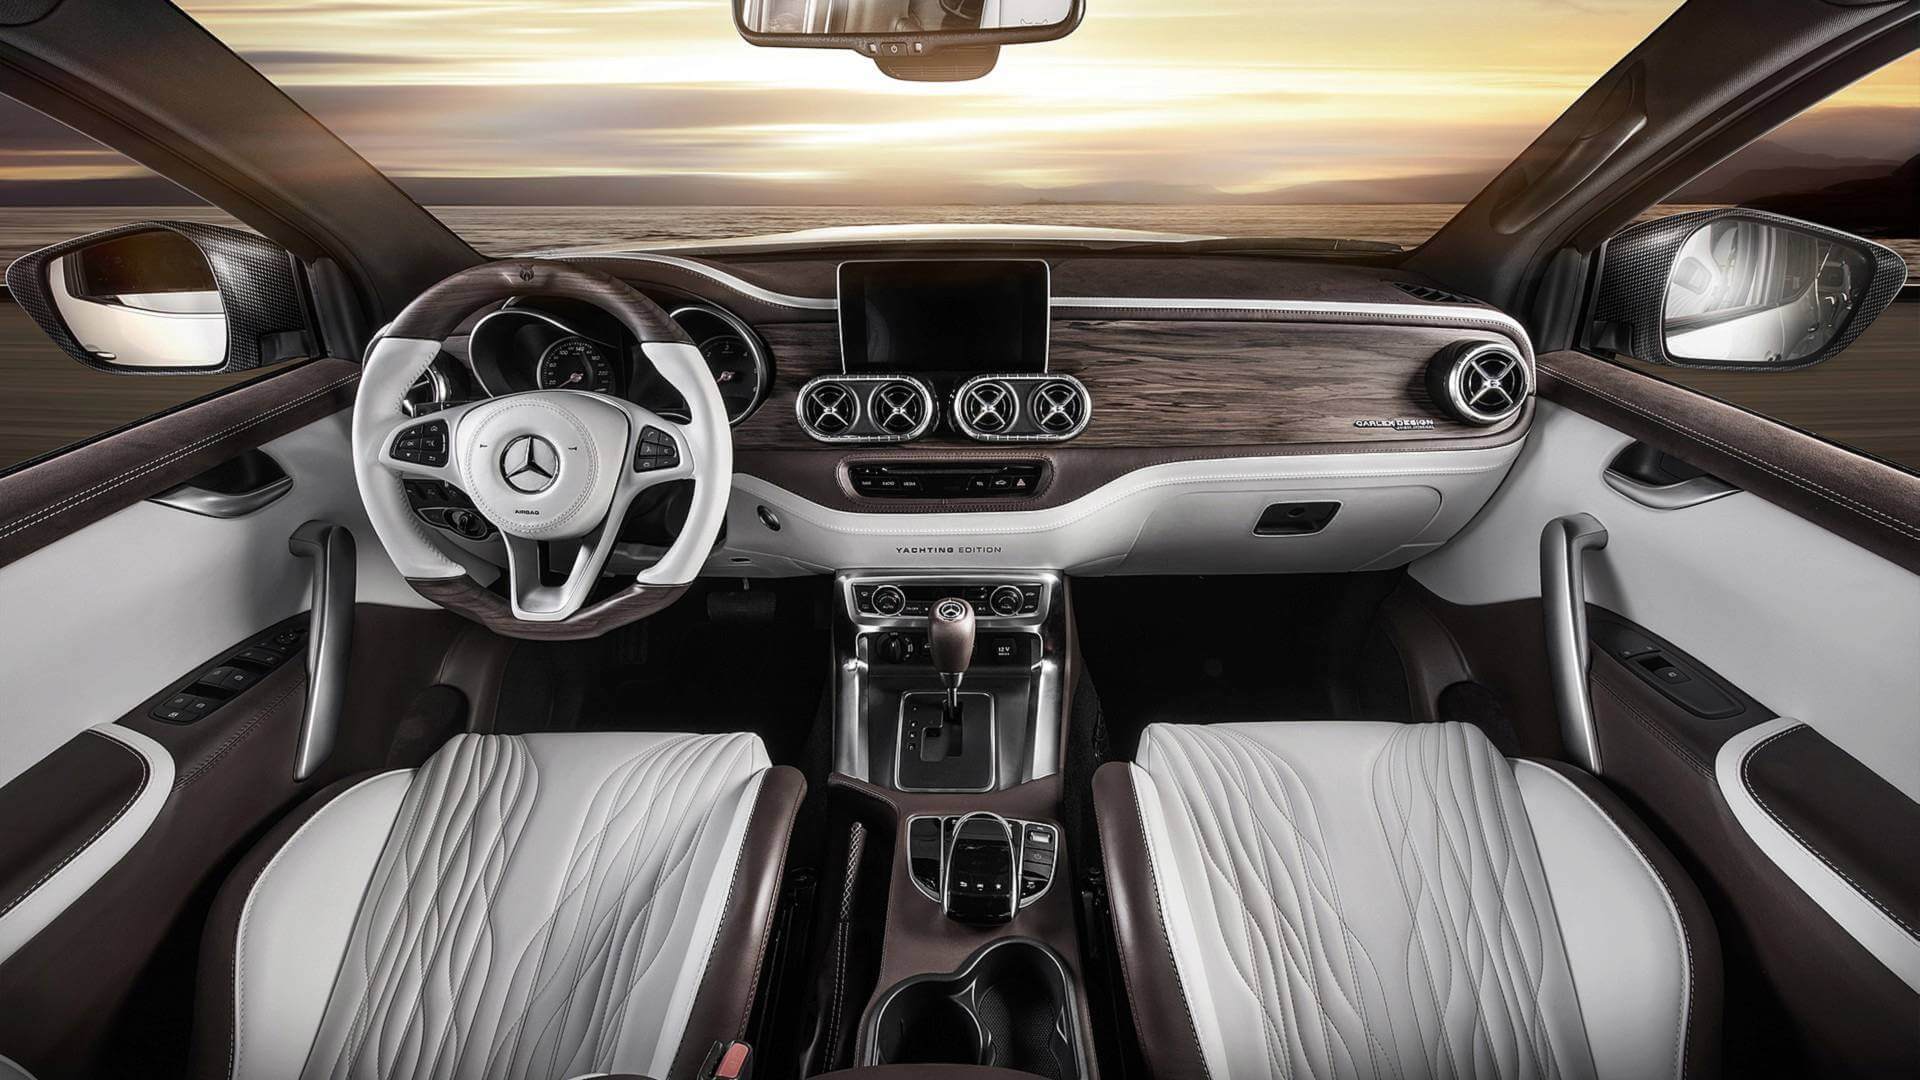 Mercedes X Class By Carlex Design tem cabine luxuosa com madeira e couro branco